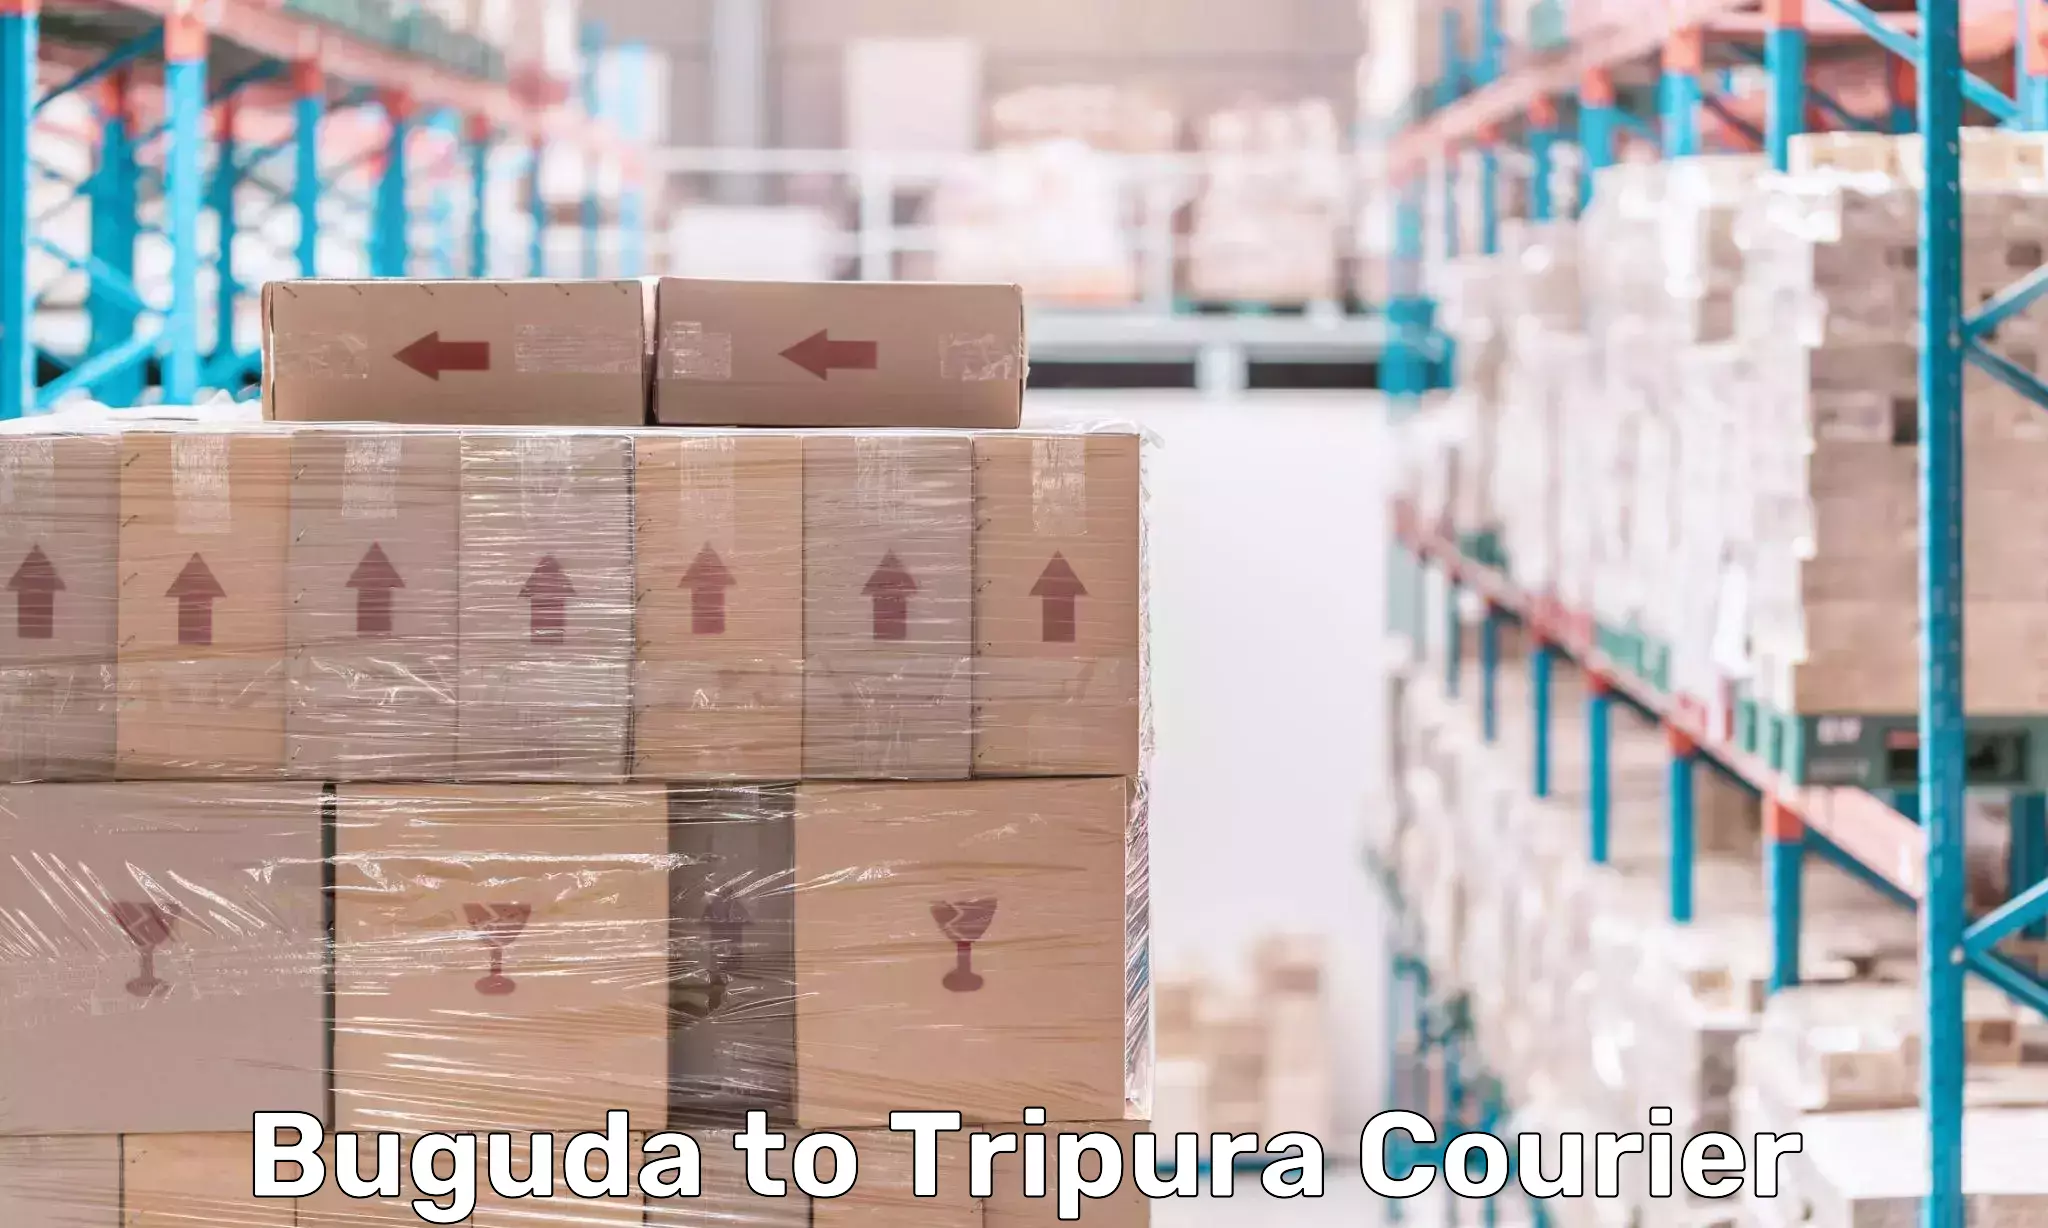 Premium courier solutions Buguda to Tripura